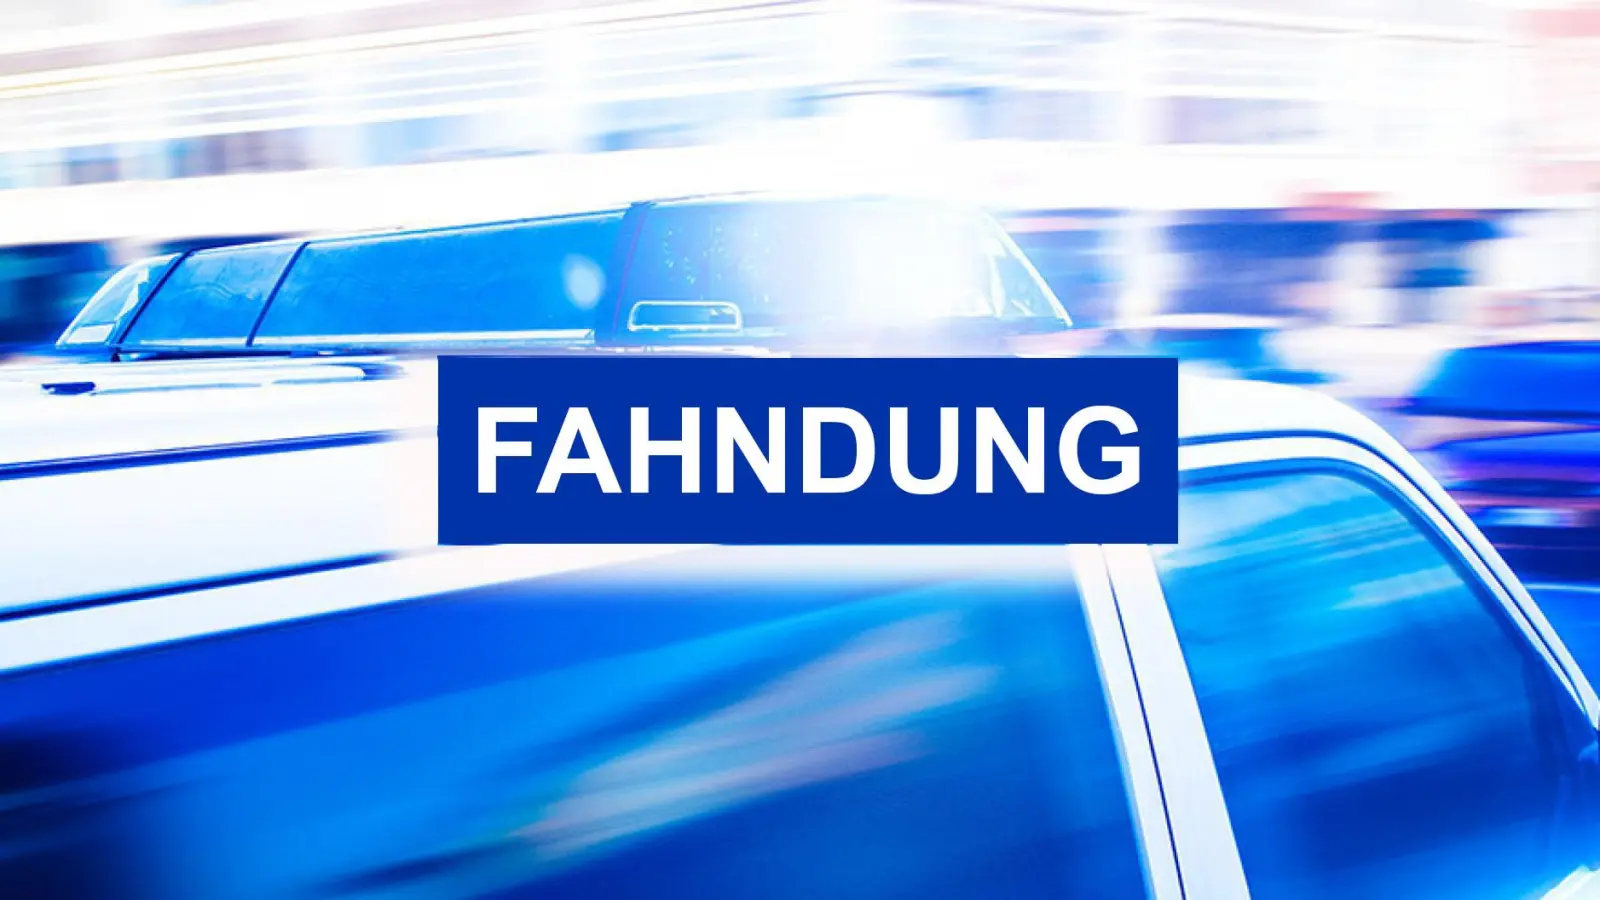 In der Nacht auf Samstag sind mehrere Täter eine Spielhalle in Regensburg eingebrochen. Die Polizei bittet nun die Bevölkerung um Mithilfe. (Bild: adobestock.com)